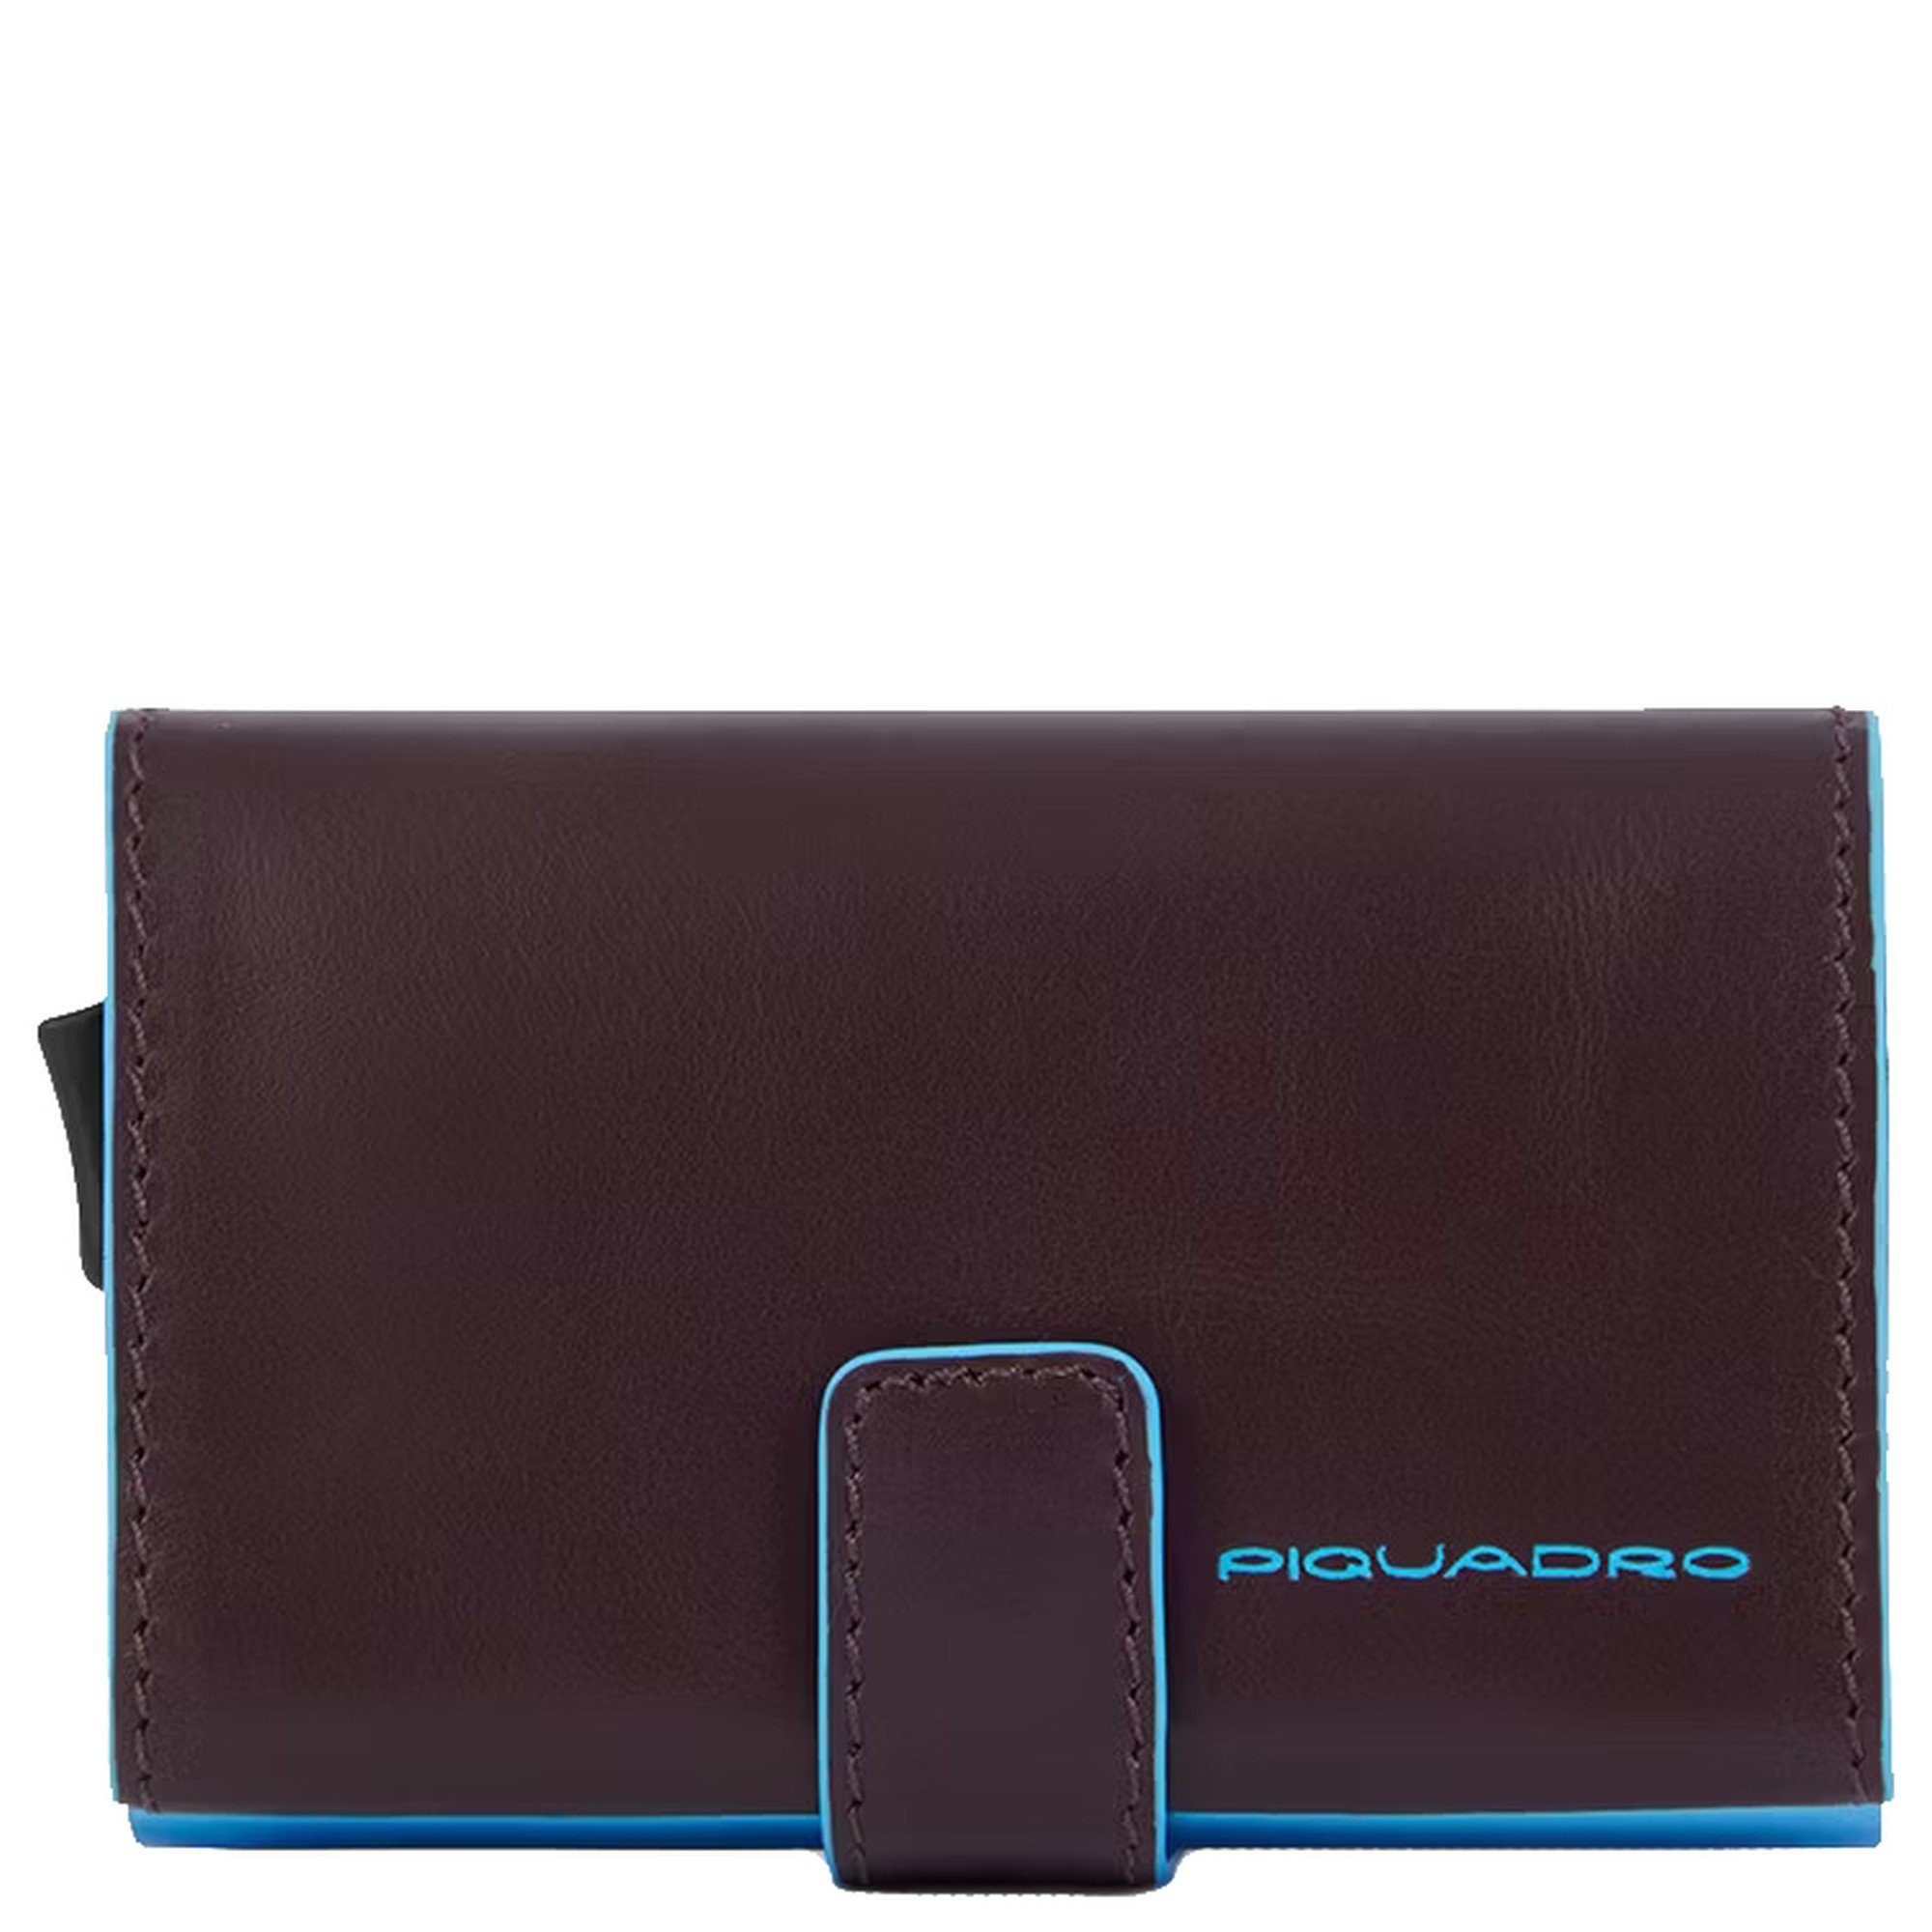 (1-tlg) Kreditkartenetui 10 - 11cc Piquadro vibl Blue Geldbörse cm Square RFID